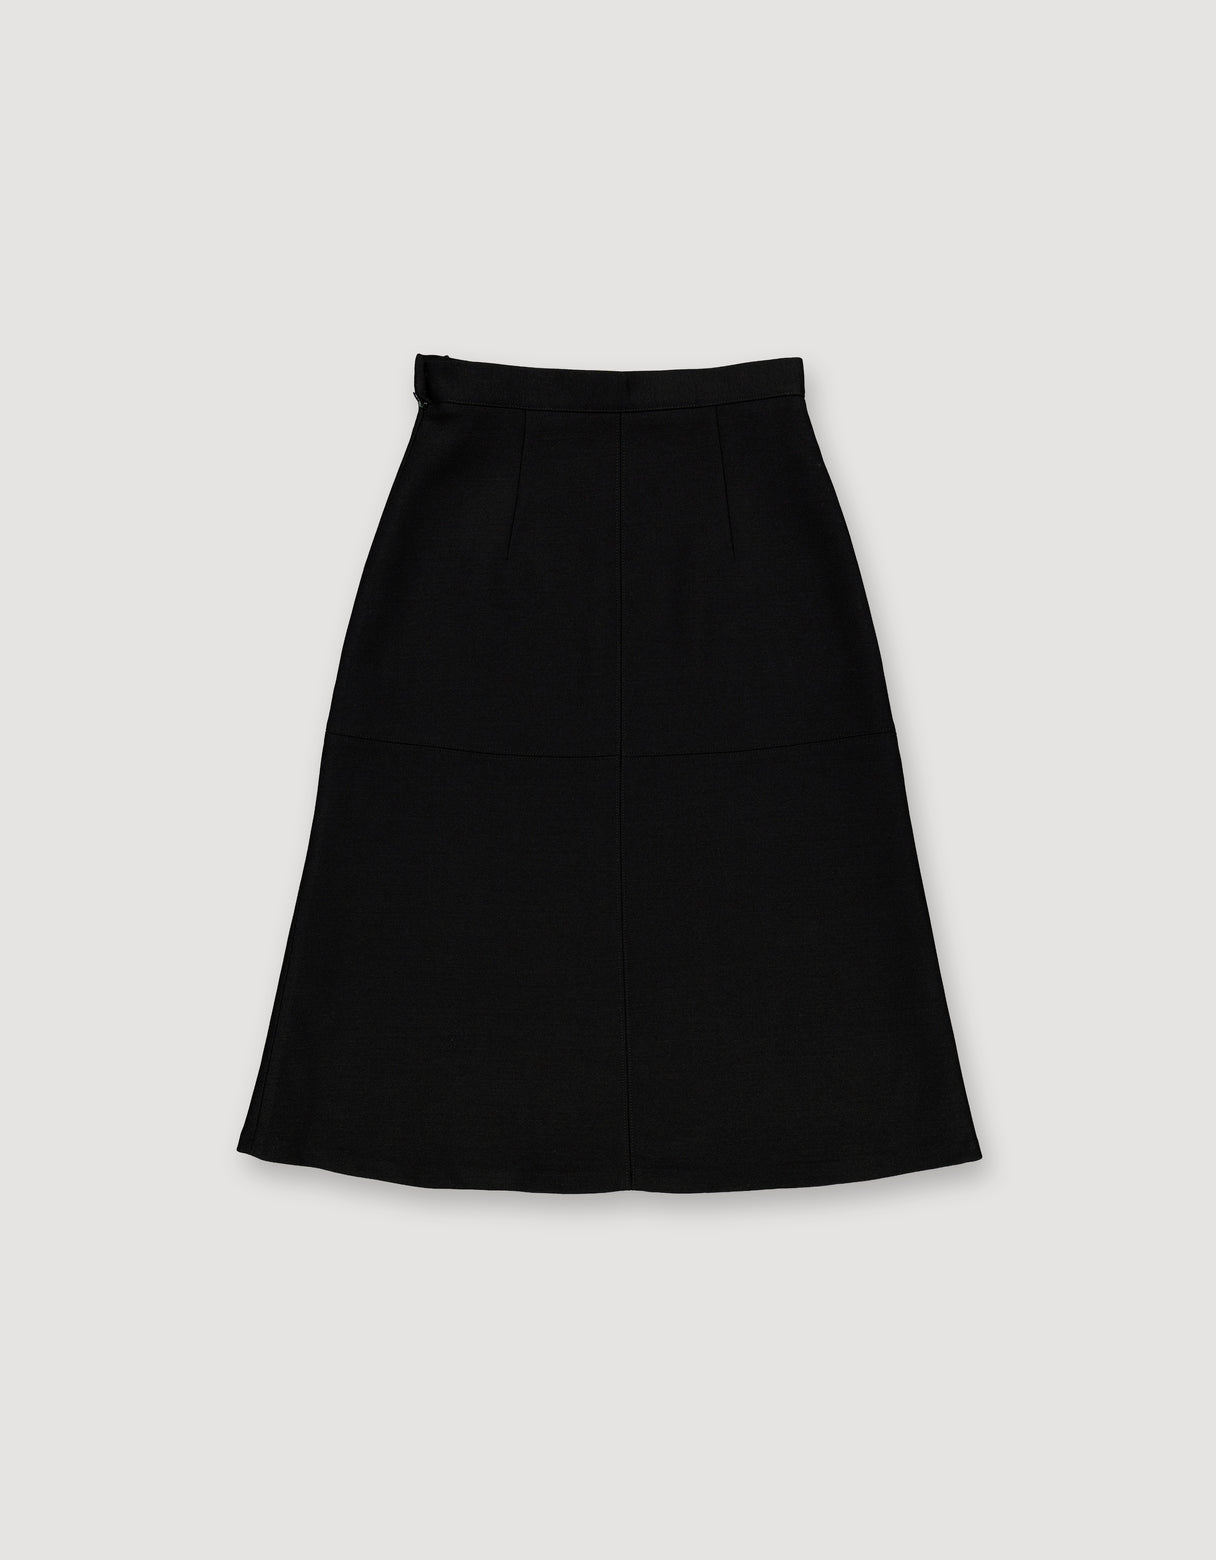 Archetype Silk & Wool Panel Skirt